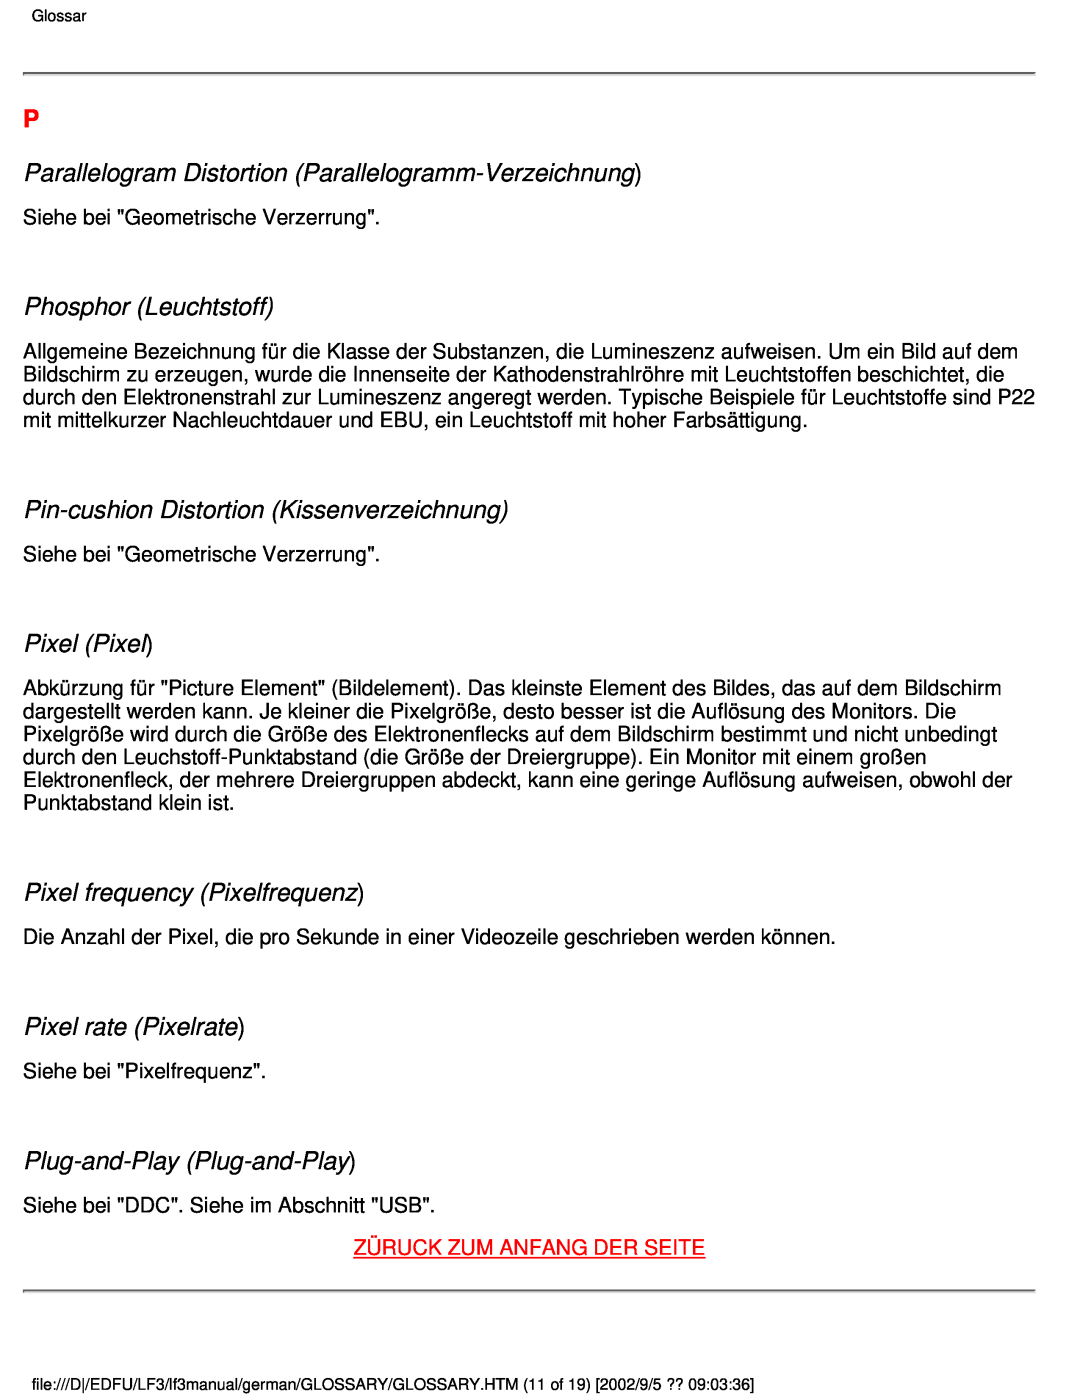 Philips 107E Parallelogram Distortion Parallelogramm-Verzeichnung, Phosphor Leuchtstoff, Pixel Pixel, Pixel rate Pixelrate 